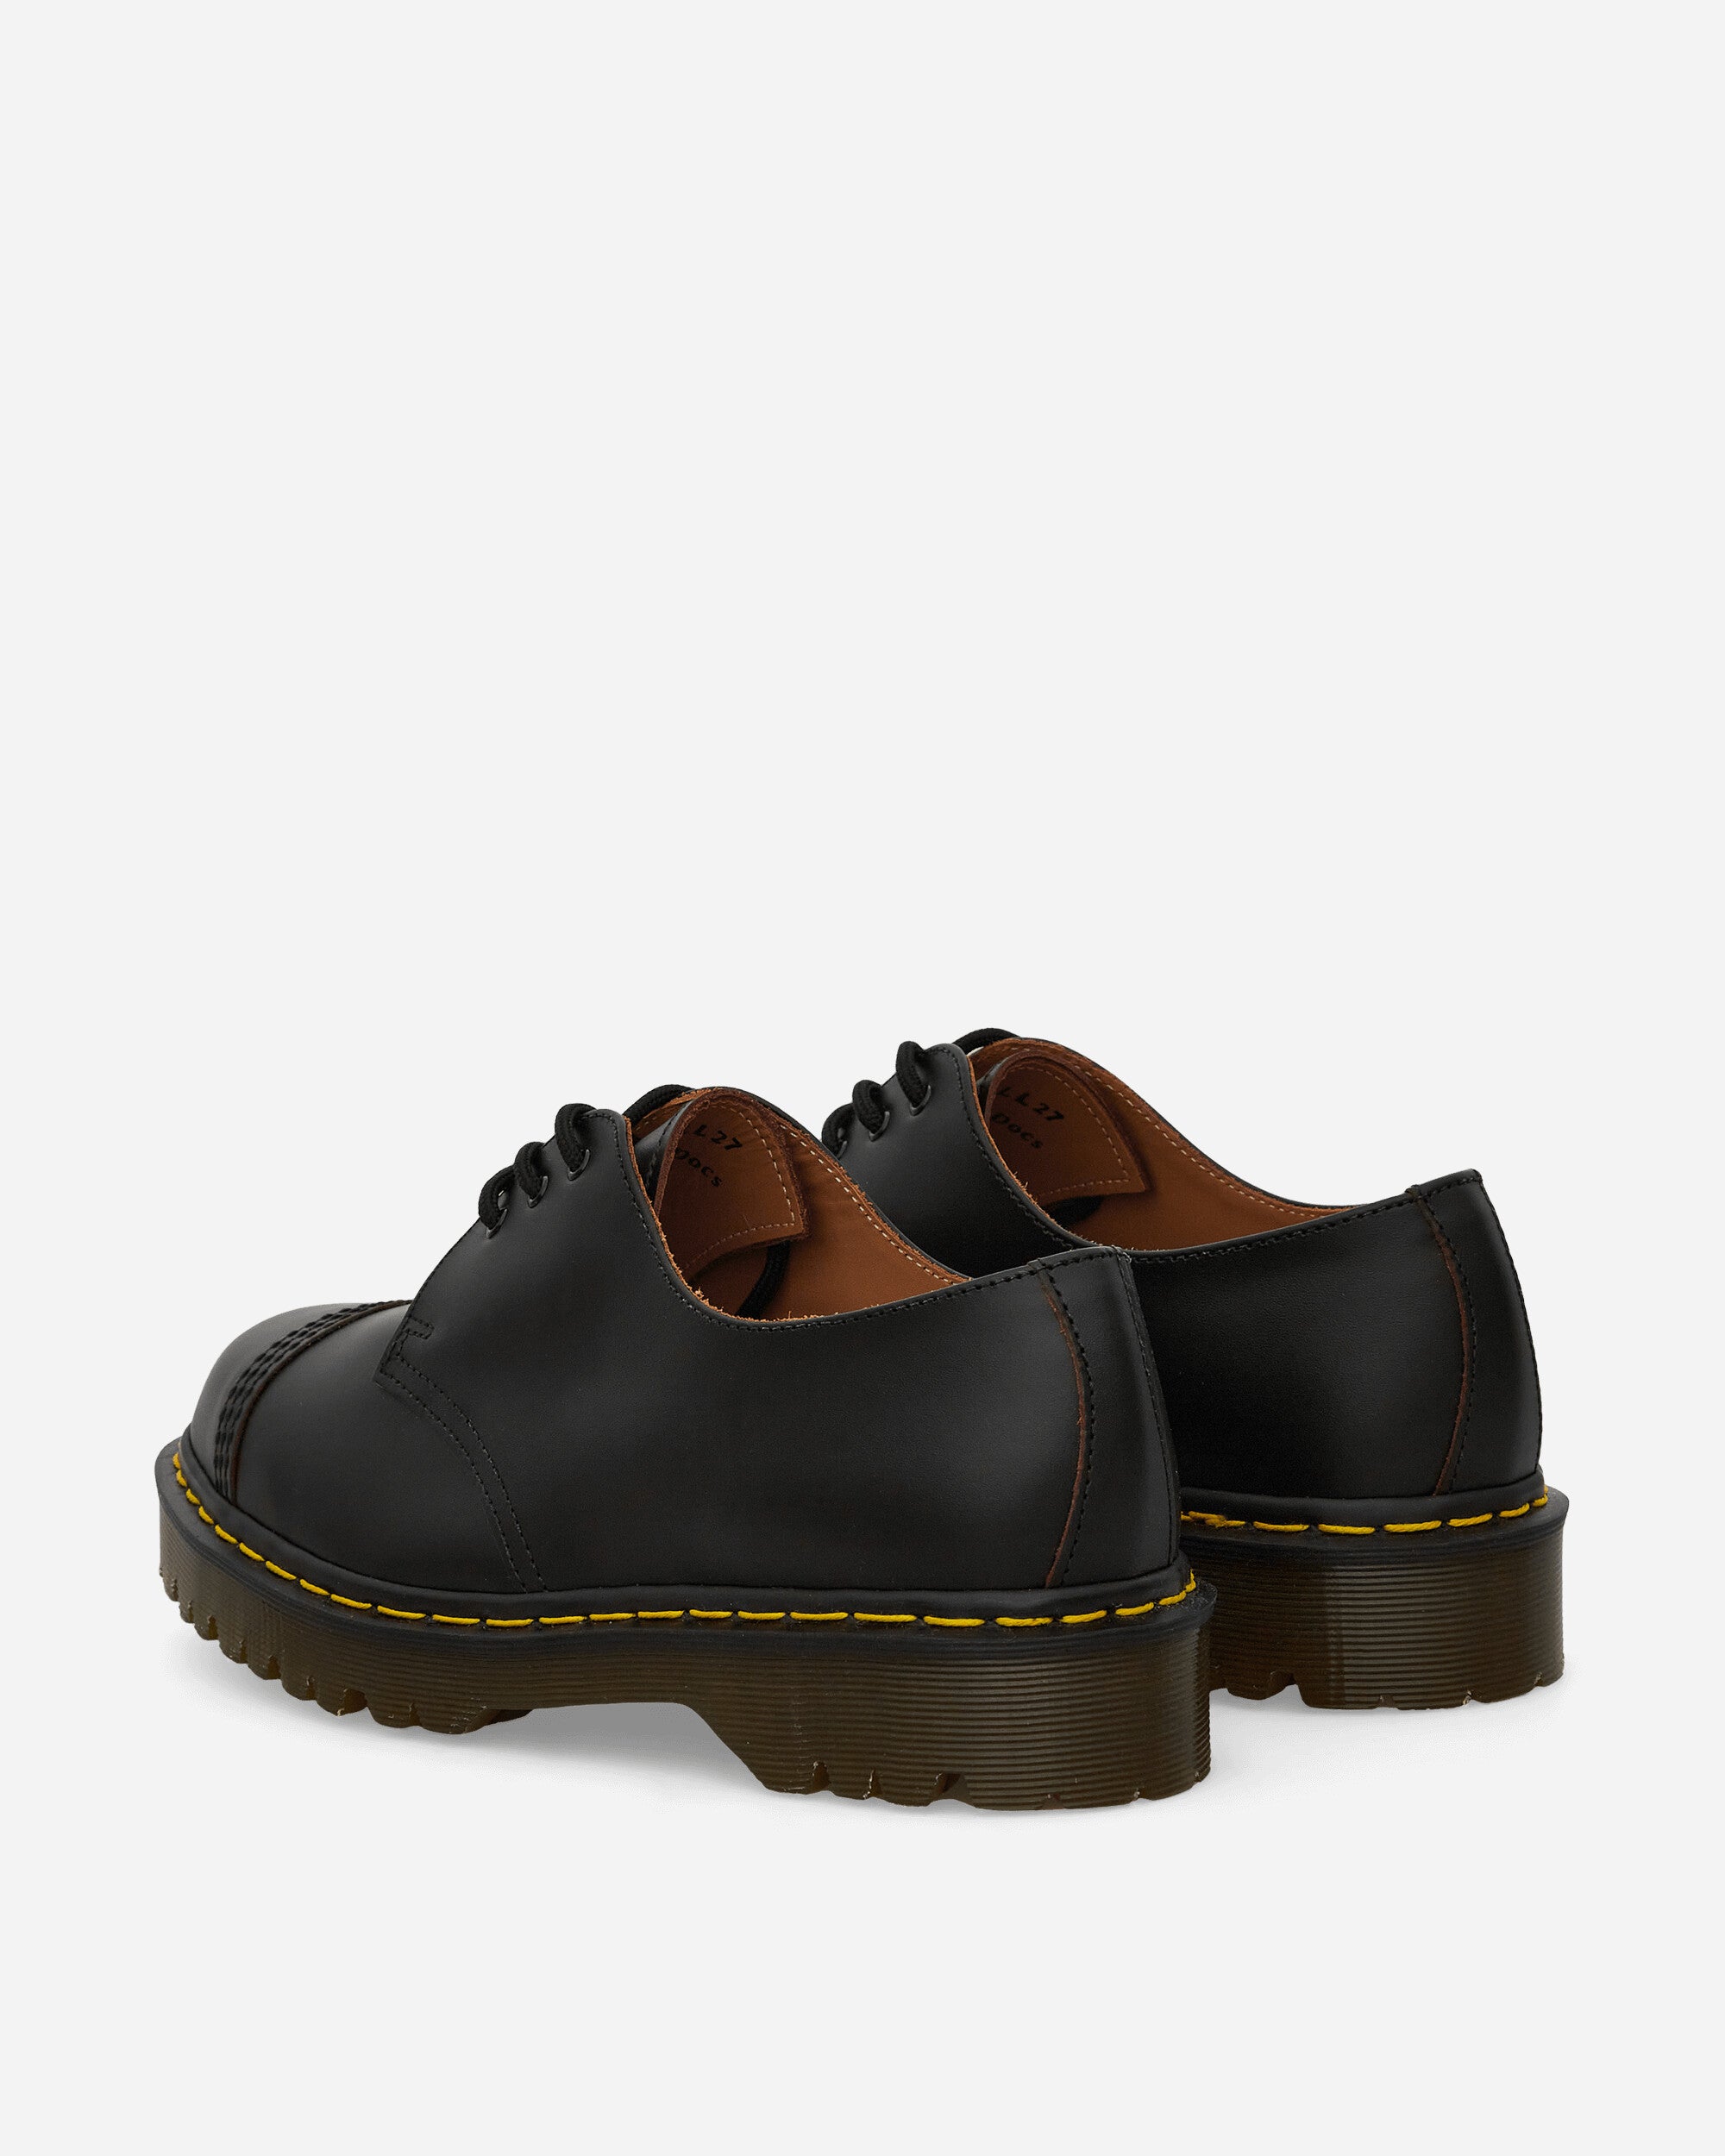 Dr. Martens 1461 Bex Toe Cap Black Quilon & Black Quilon Classic Shoes Laced Up 26787001 001